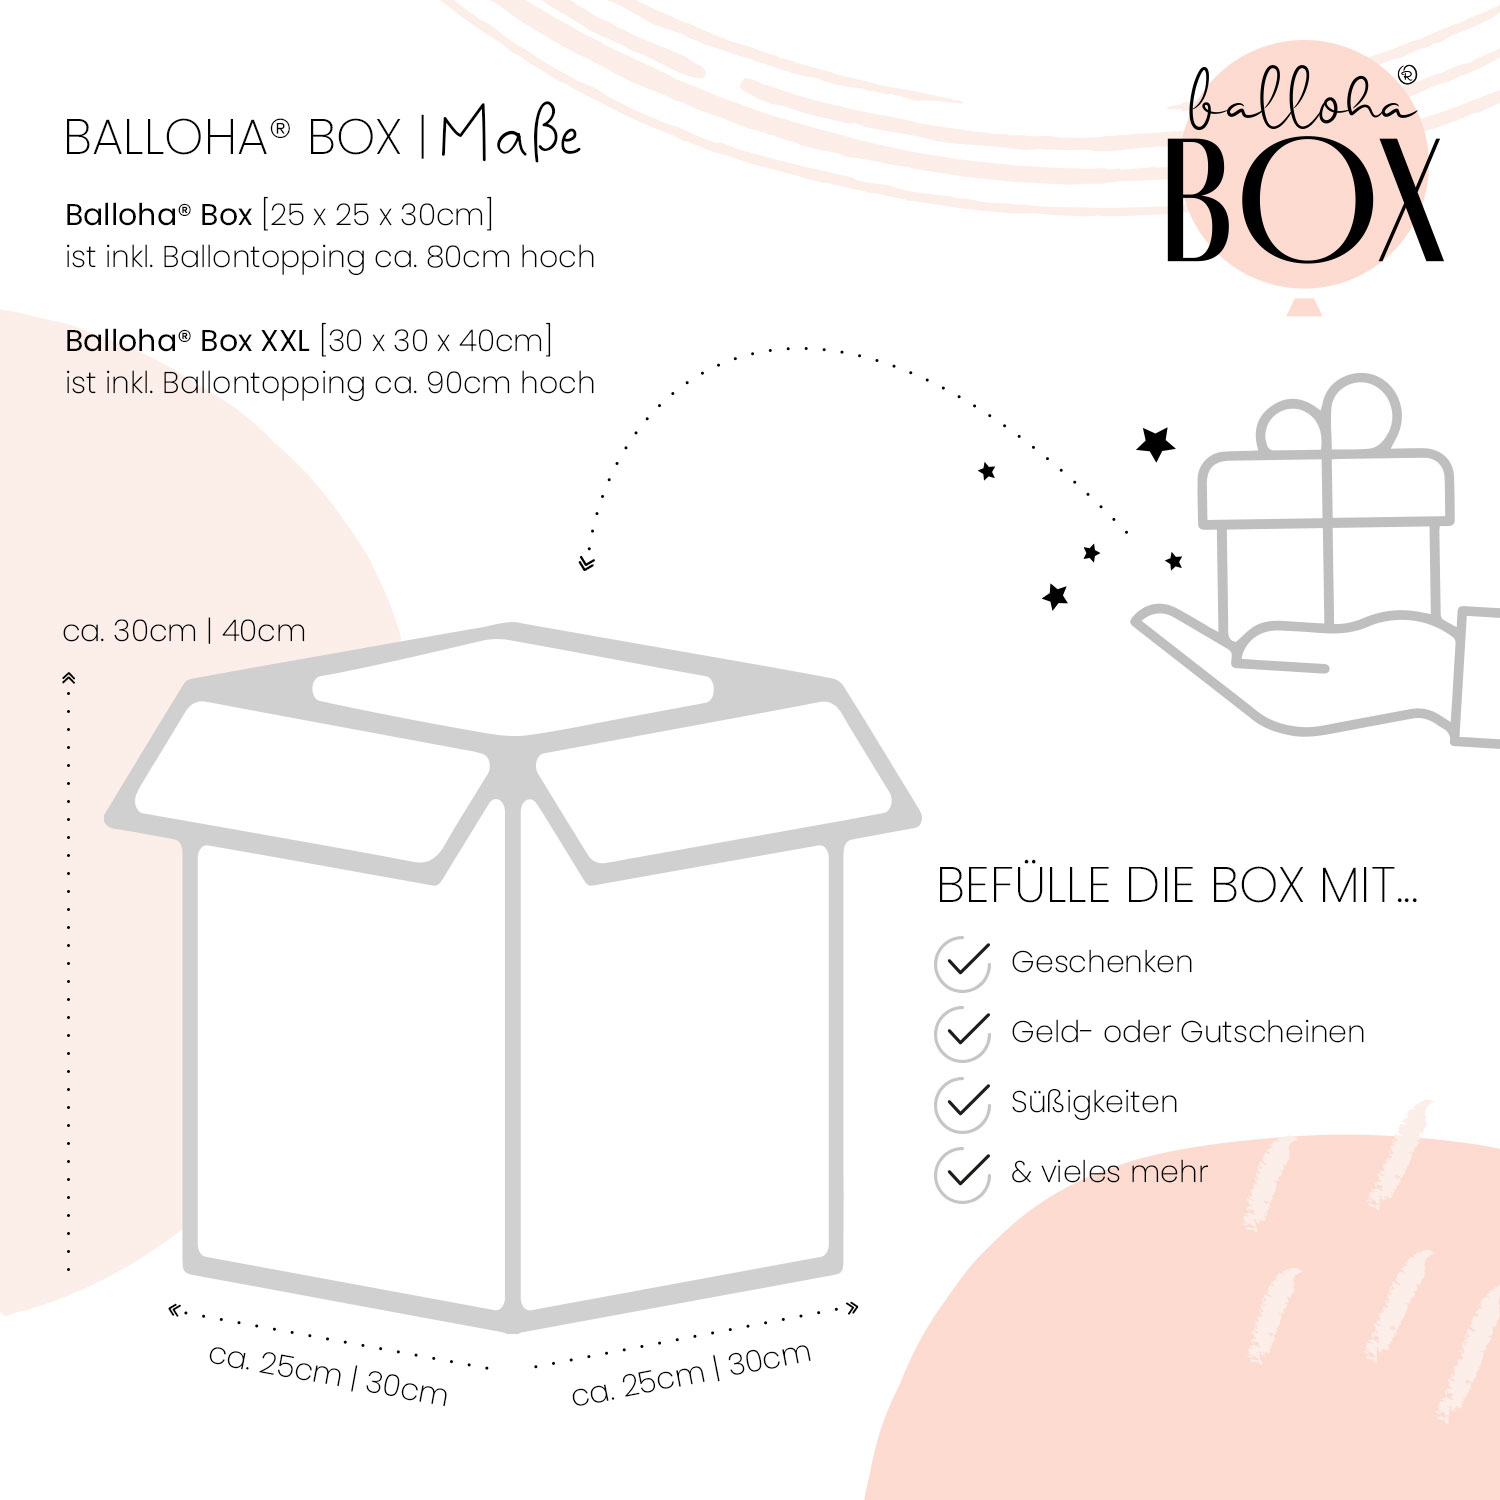 Balloha® Box mit Personalisierung - DIY Wieder ein Jahr älter? EGAL